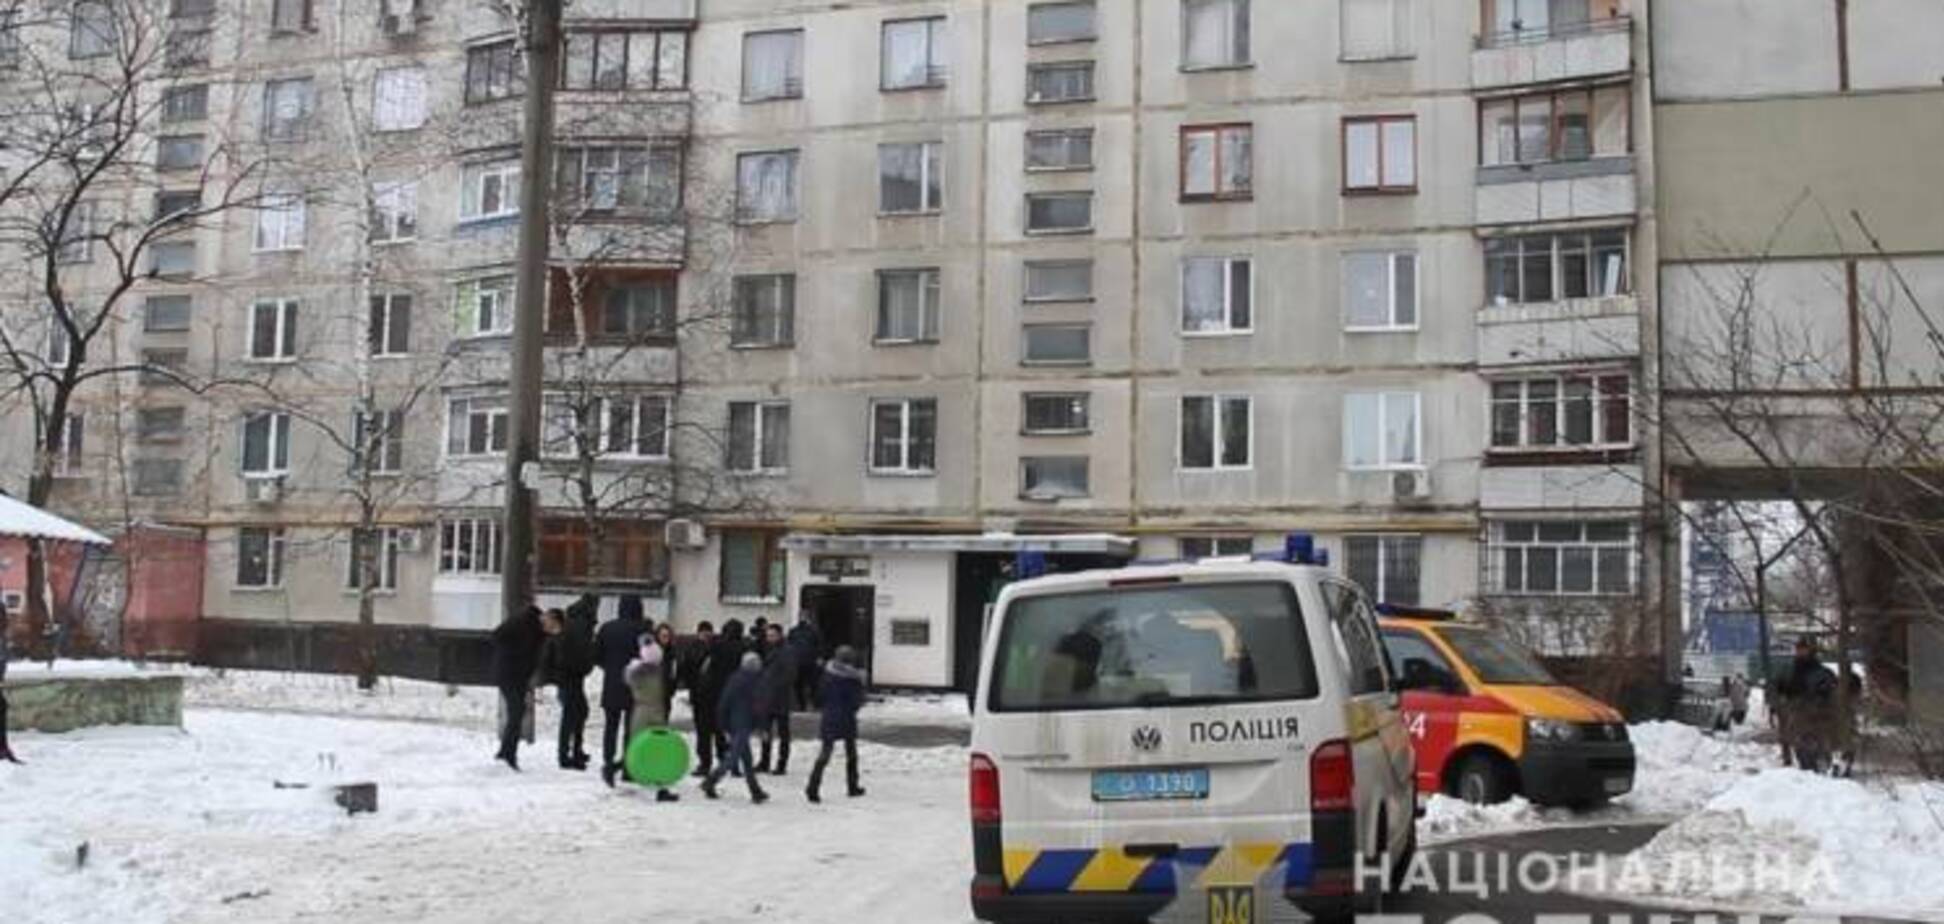 Единственный ребенок в семье: выяснились новые подробности об убитых в Харькове студентках